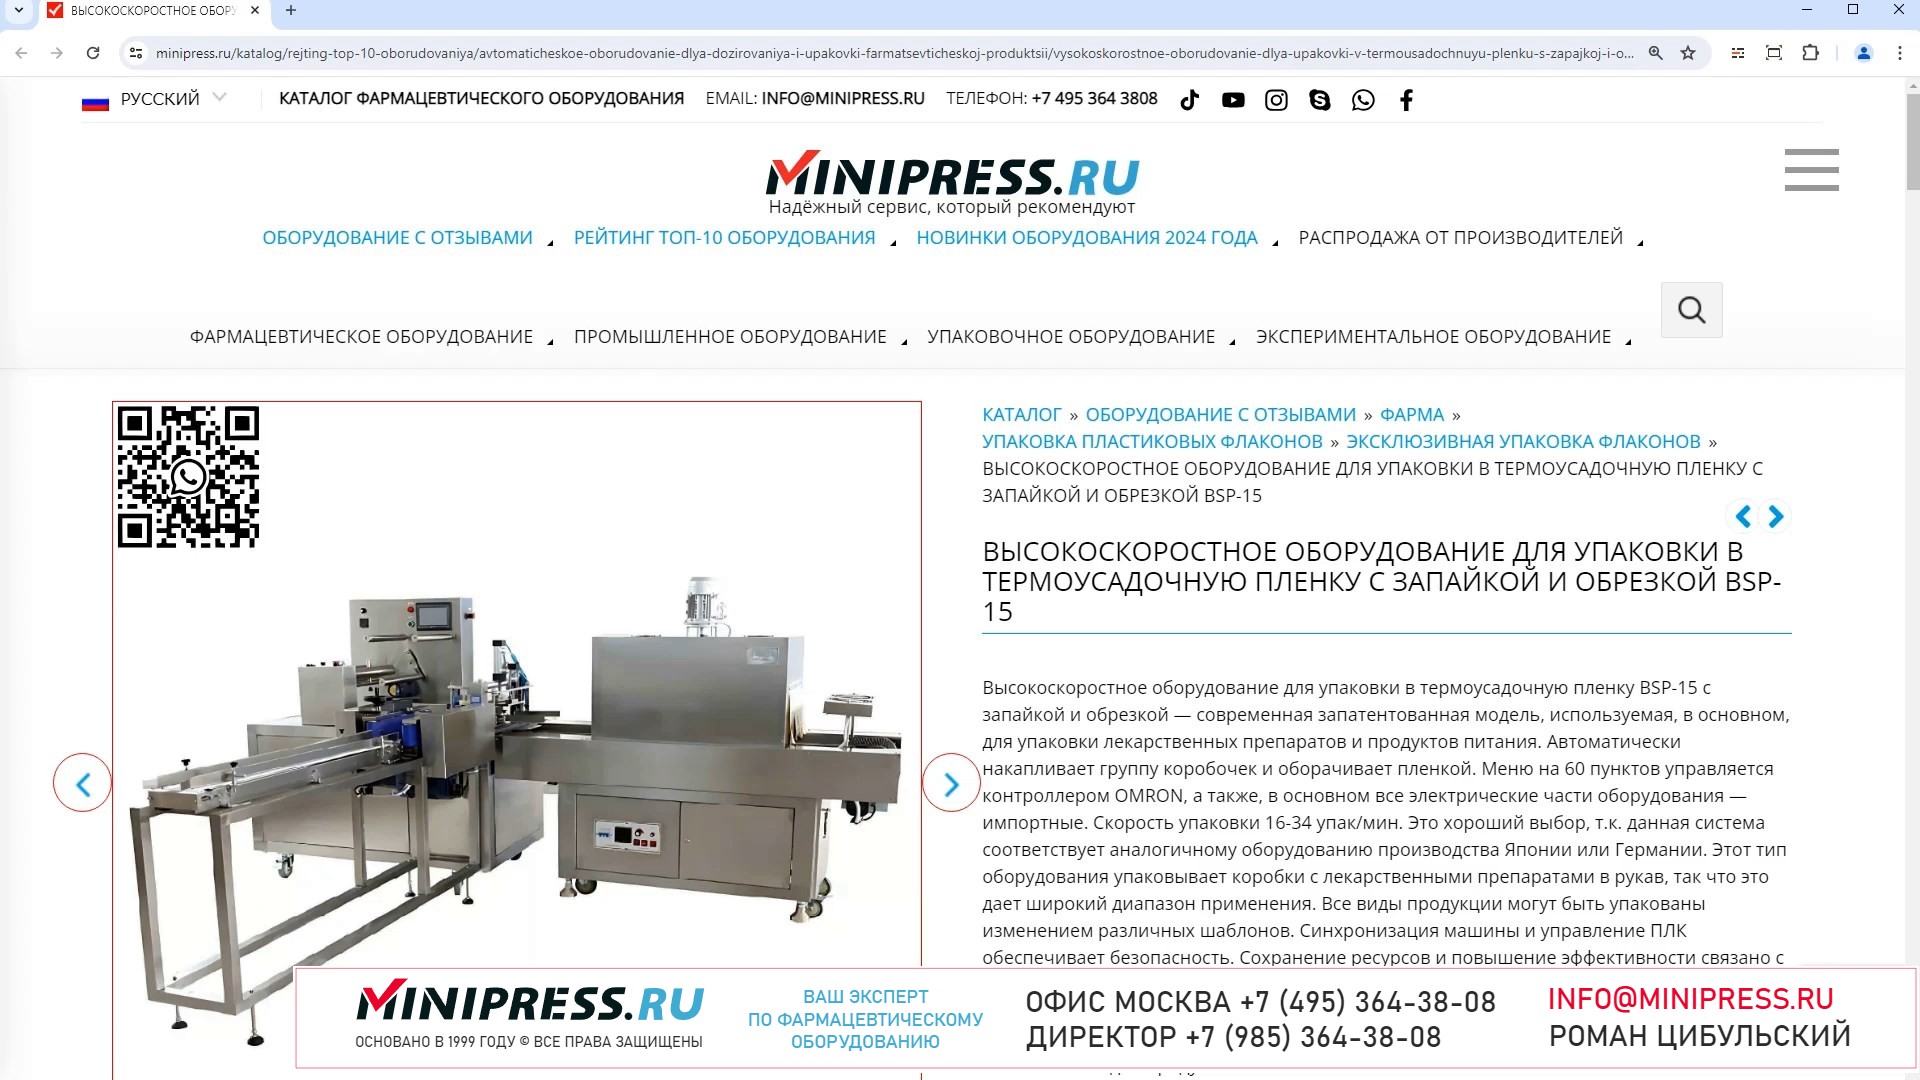 Minipress.ru Высокоскоростное оборудование для упаковки в термоусадочную пленку с запайкой и обрезк